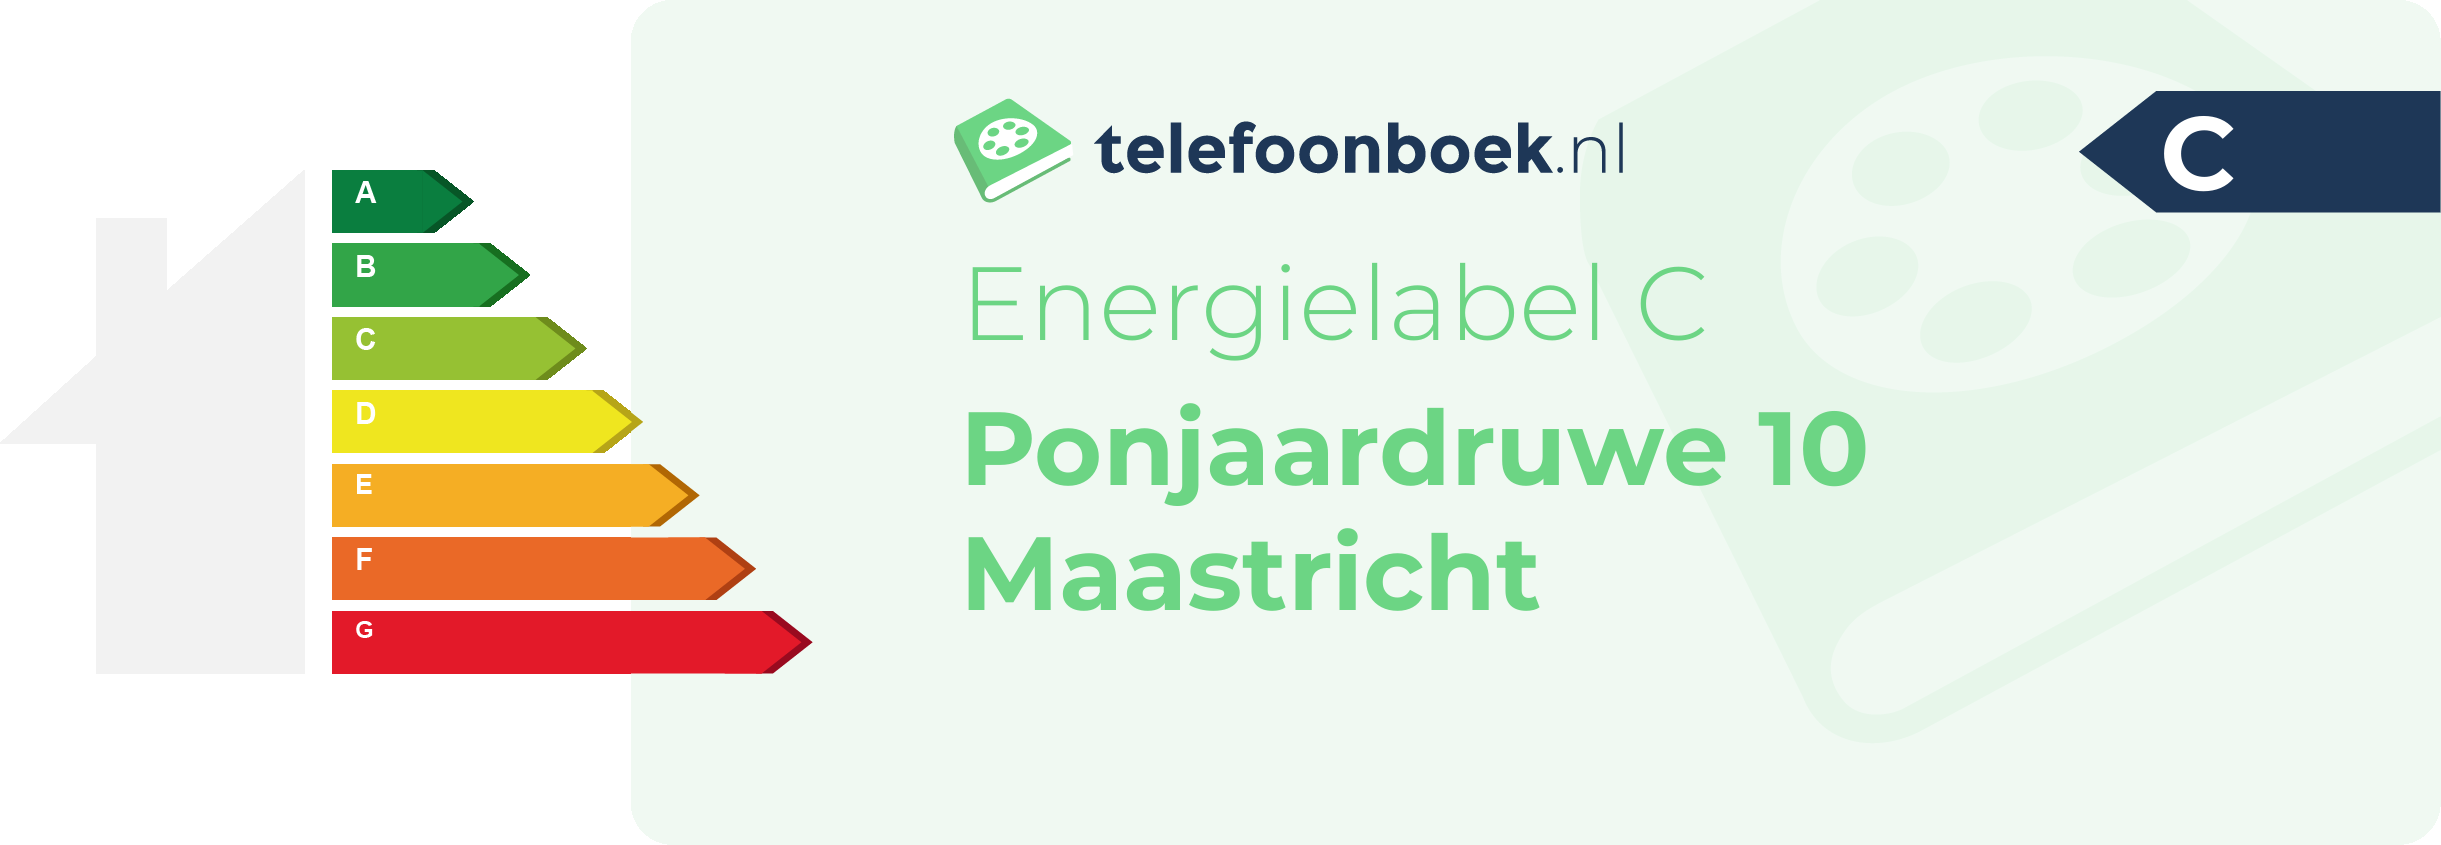 Energielabel Ponjaardruwe 10 Maastricht